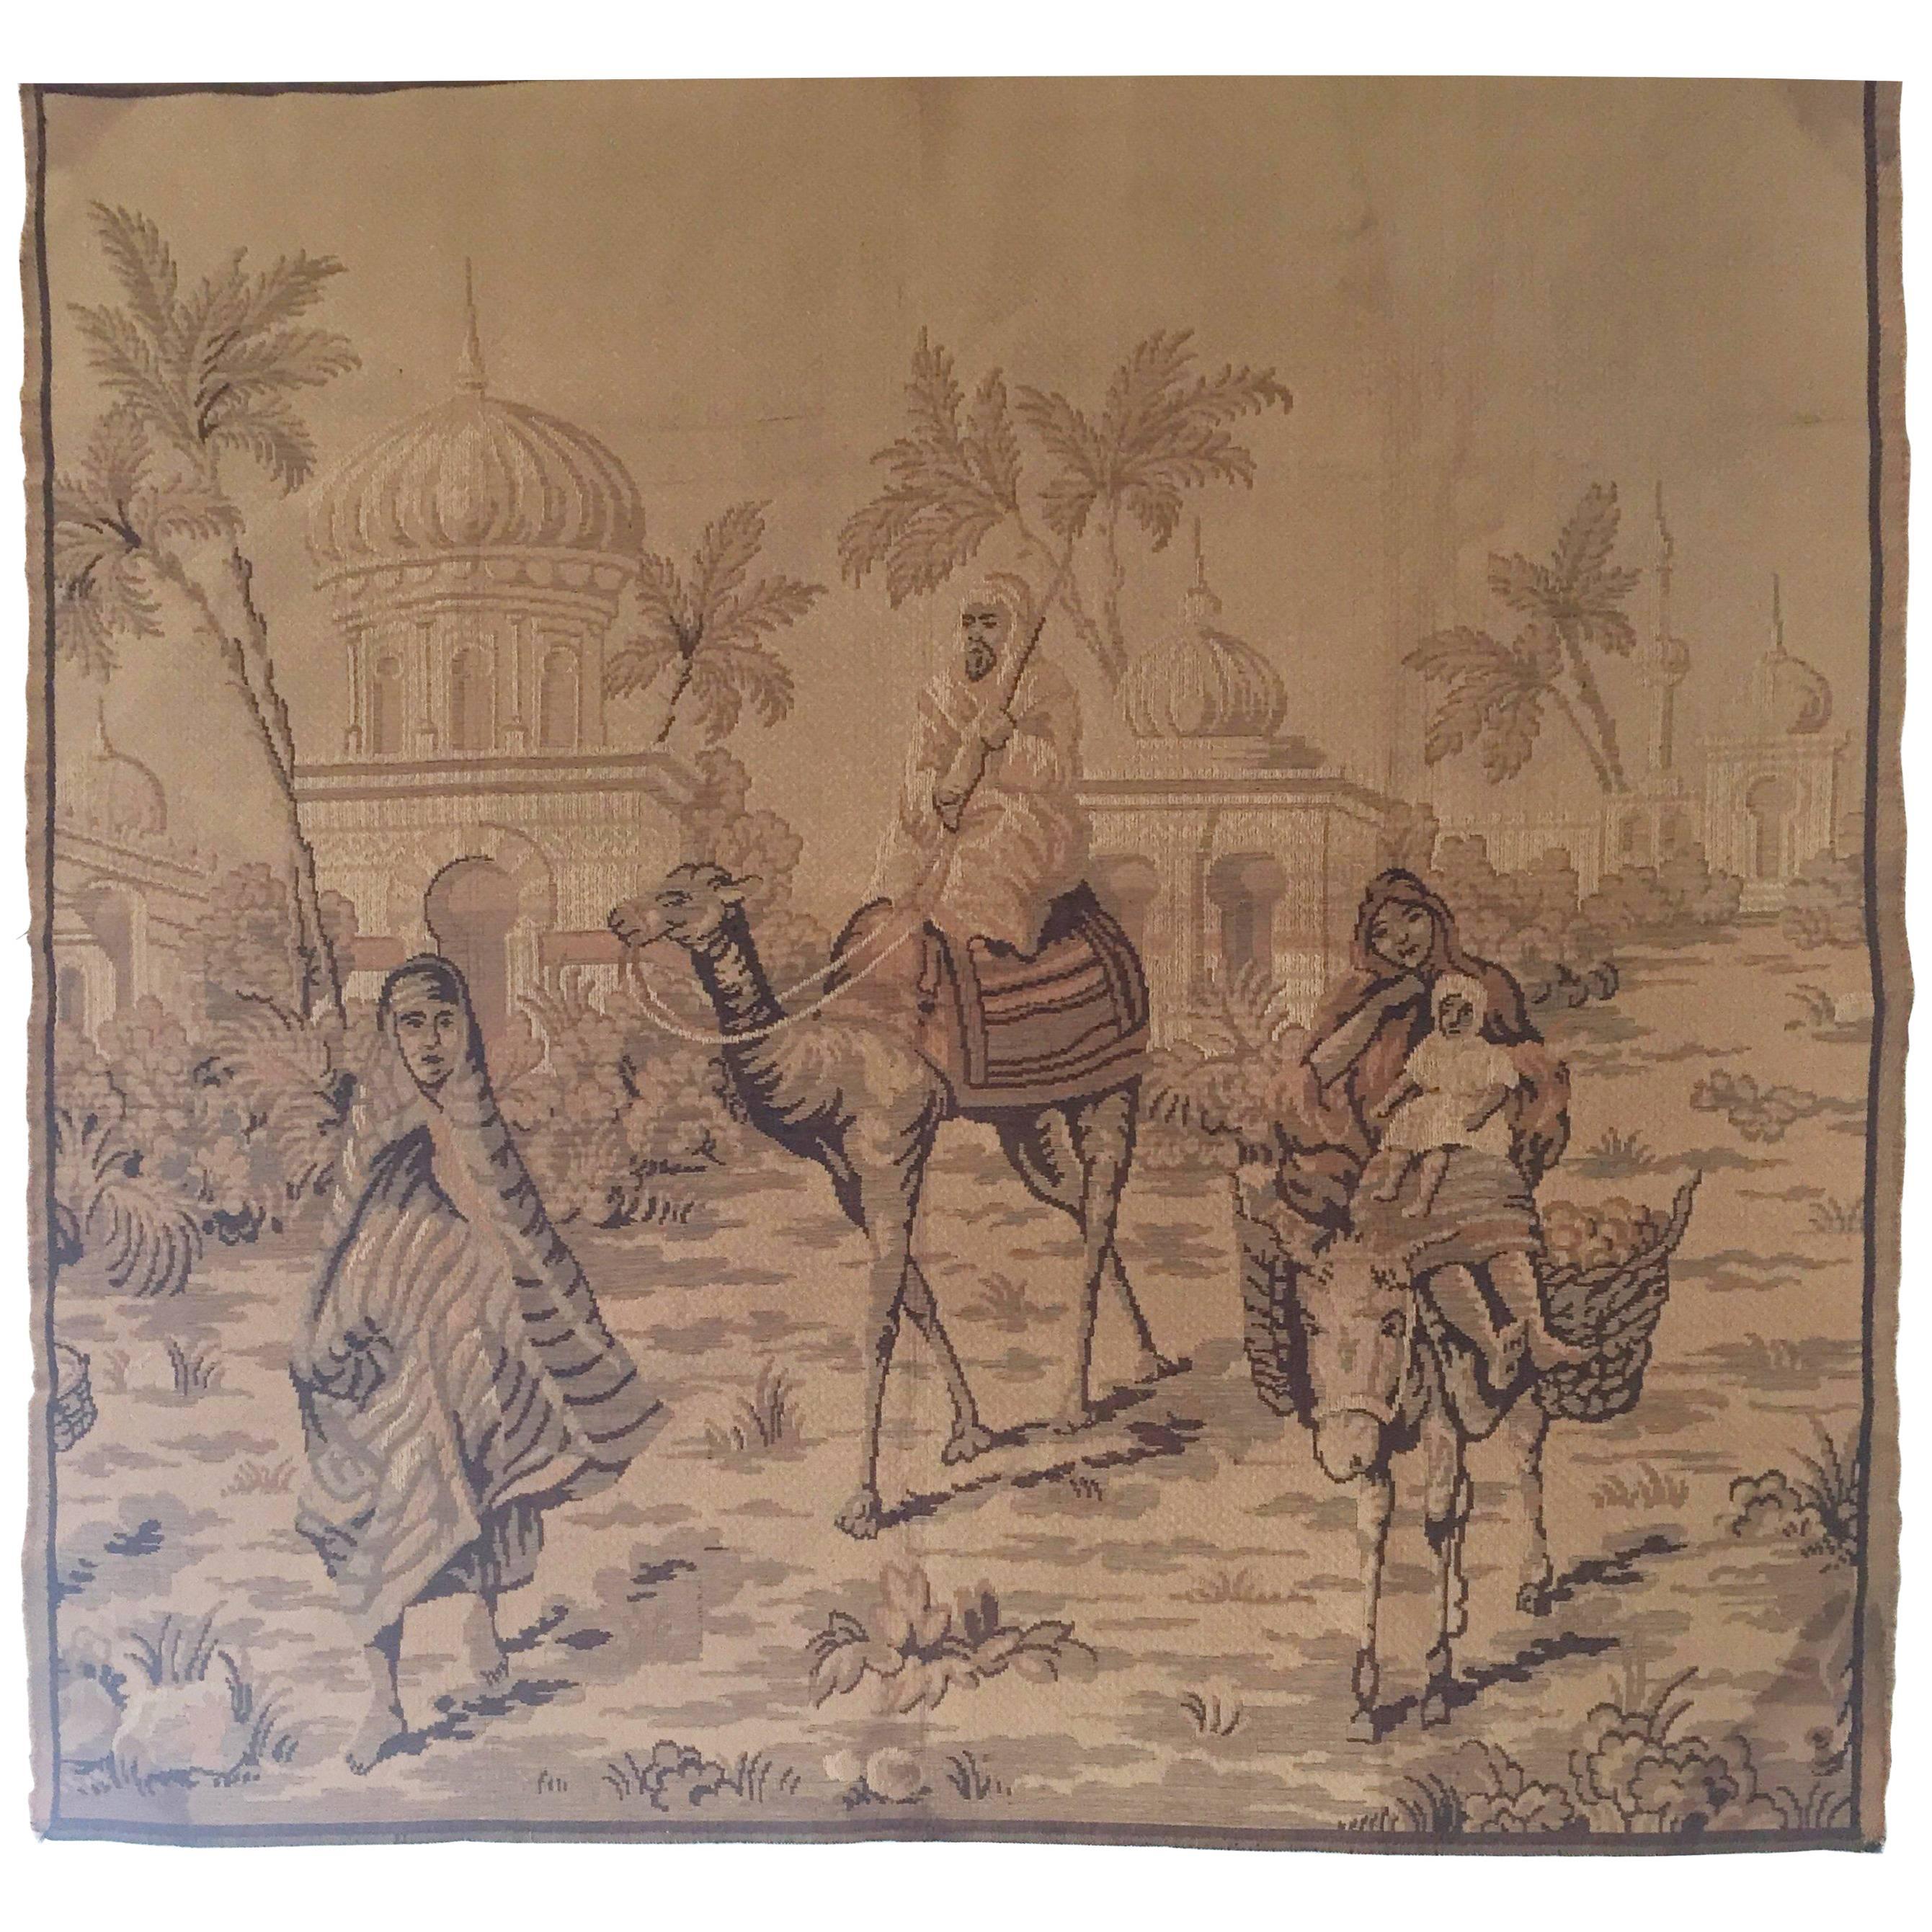 Wandteppich mit einer orientalistischen Szene und maurischer Architektur aus dem 19. Jahrhundert